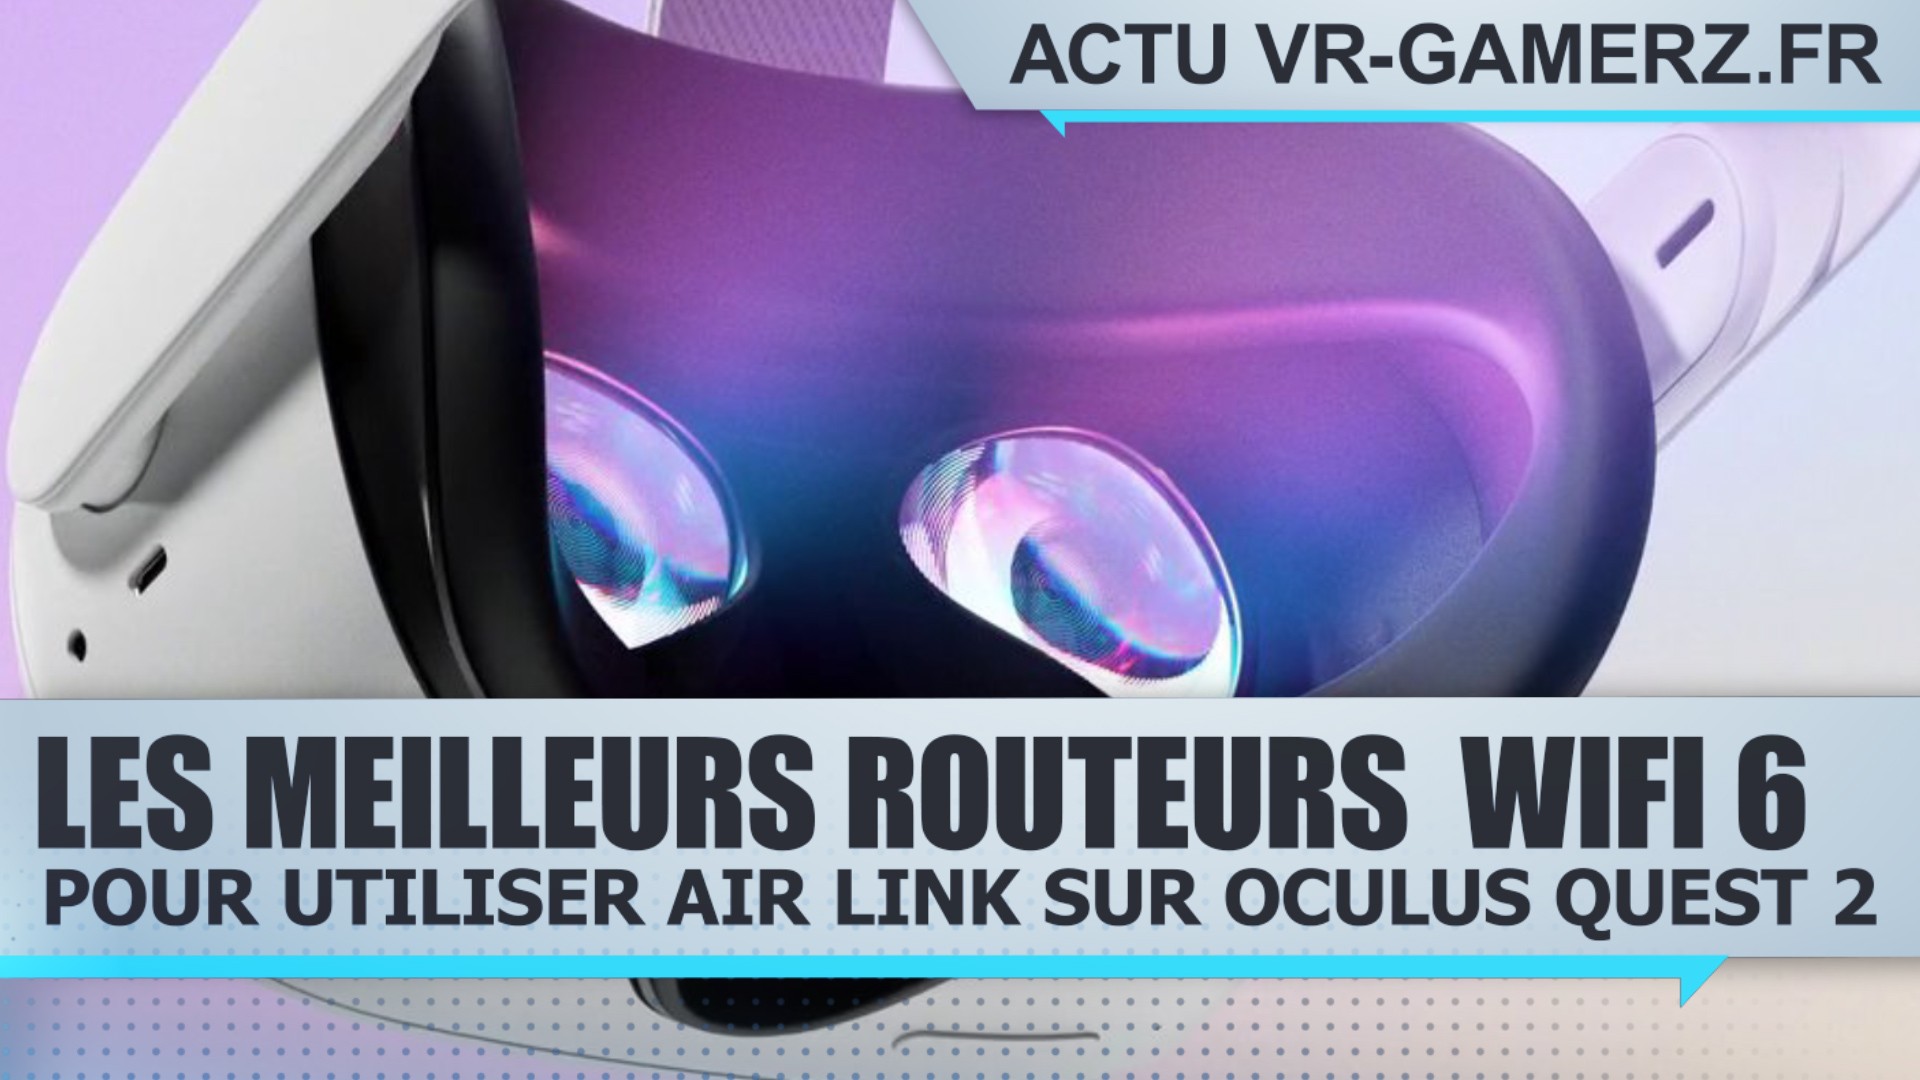 AIR link : Les meilleurs routeurs pour Oculus quest 2 !